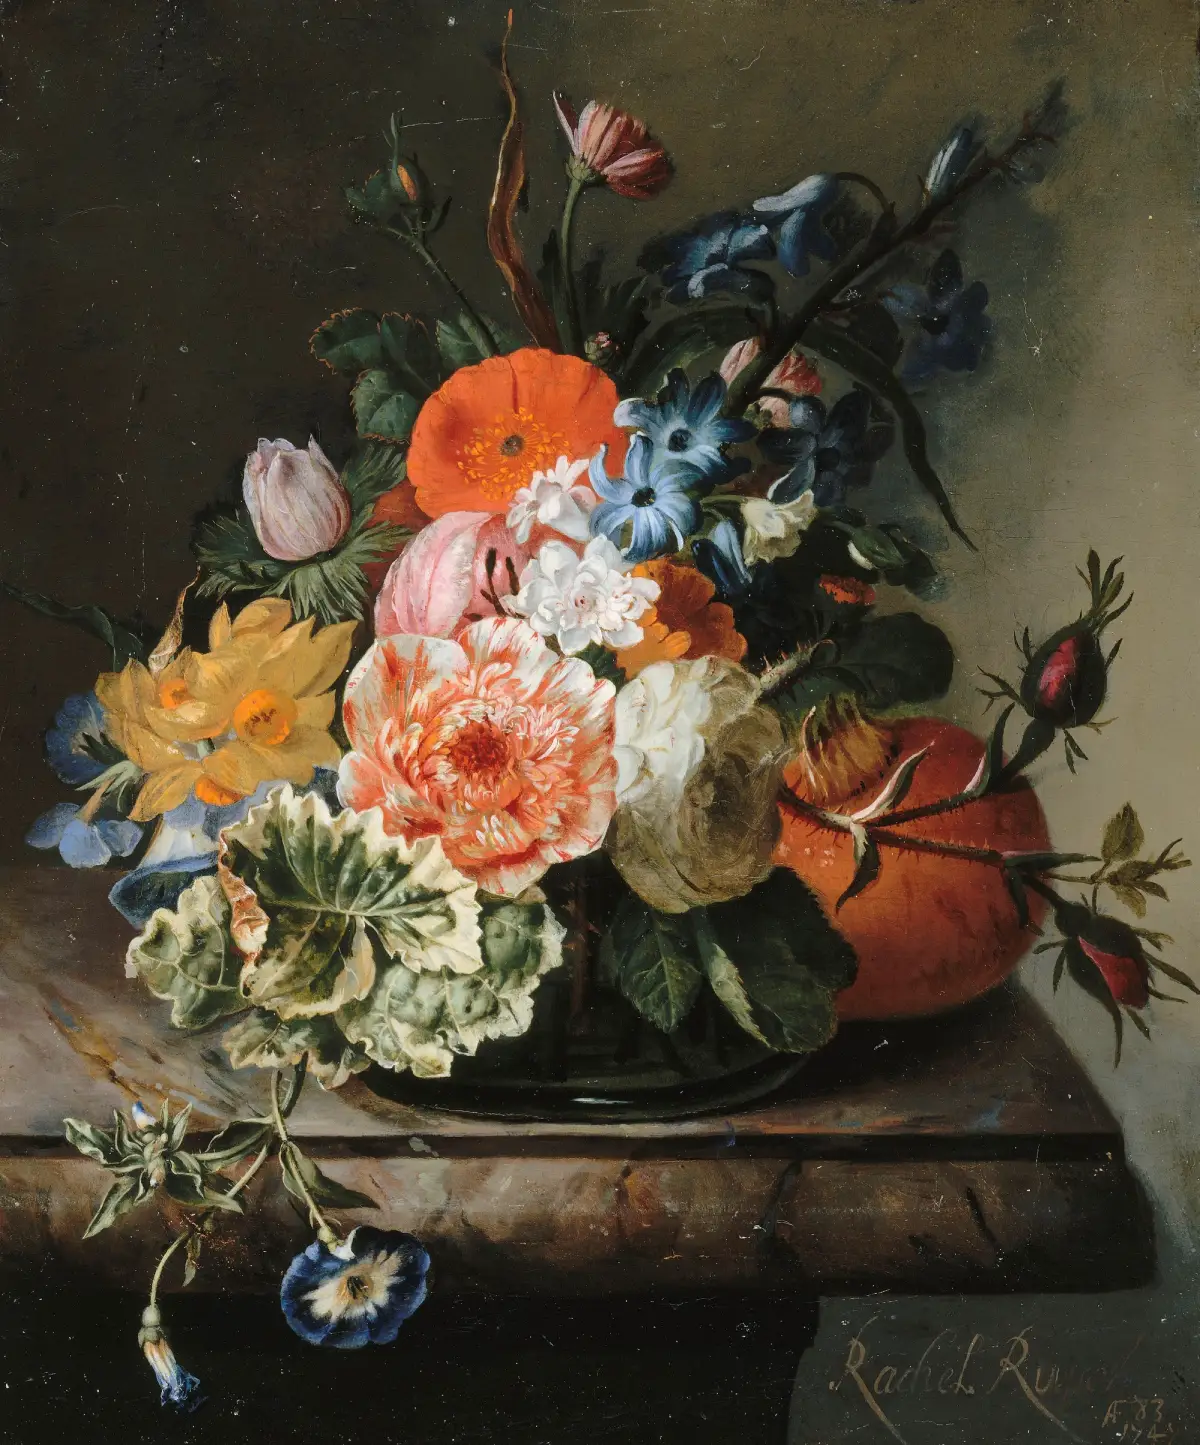 Peinture "Fleurs sur une tablette de marbre" de Rachel Ruysch. Un vase de verre sur une table, avec diverses fleurs formant bouquet